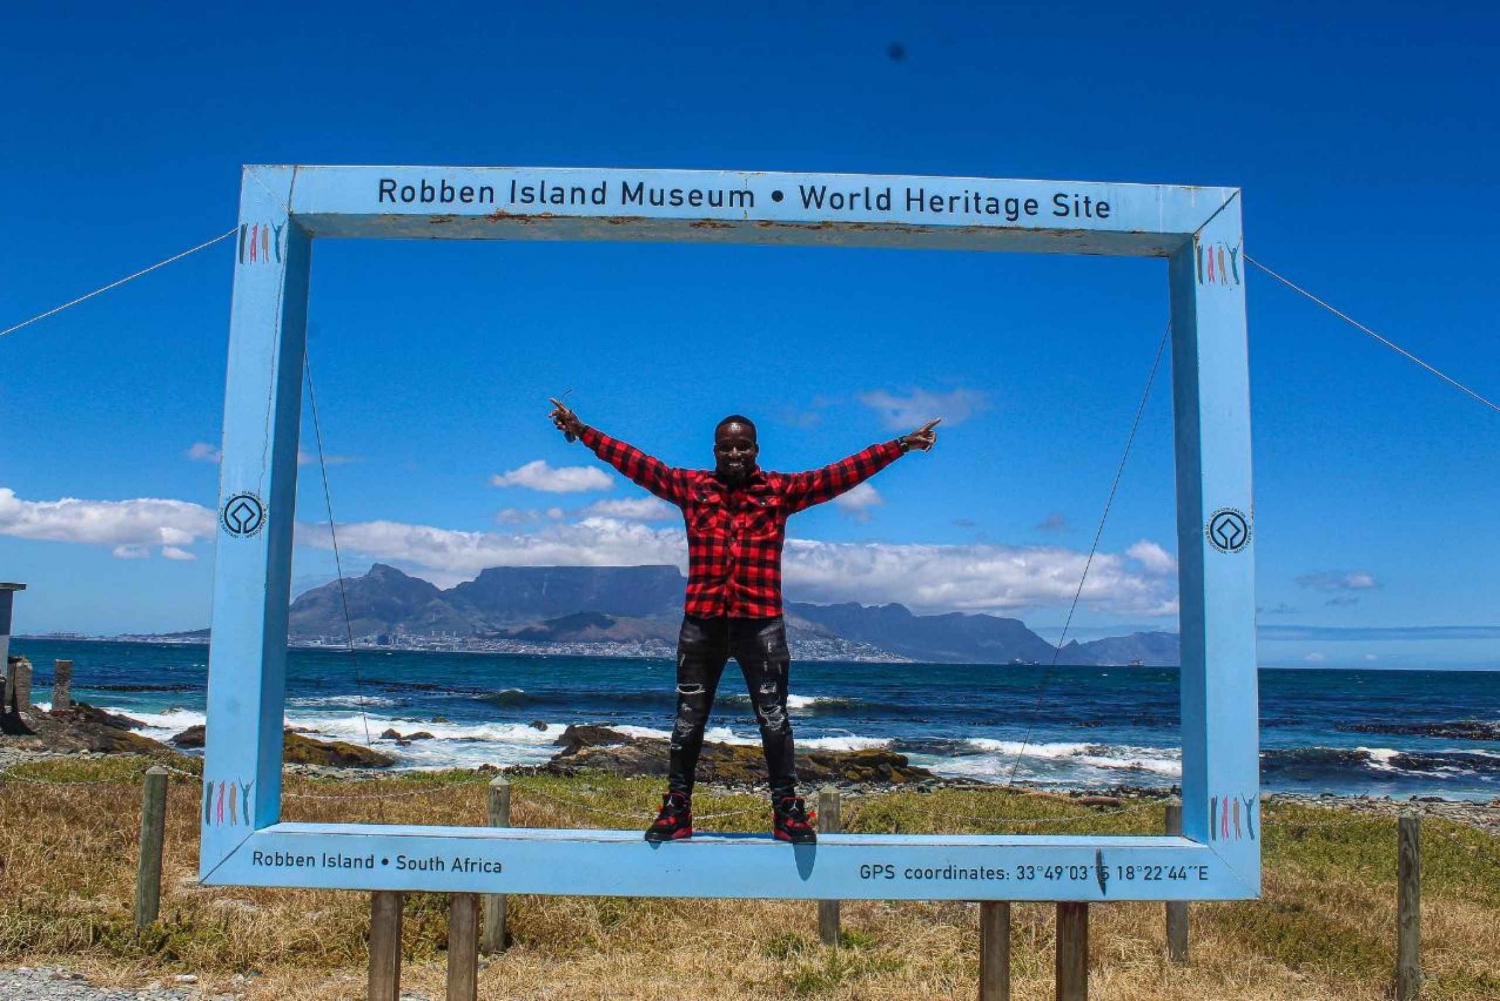 Città del Capo: Biglietti per Robben Island e Table Mountain